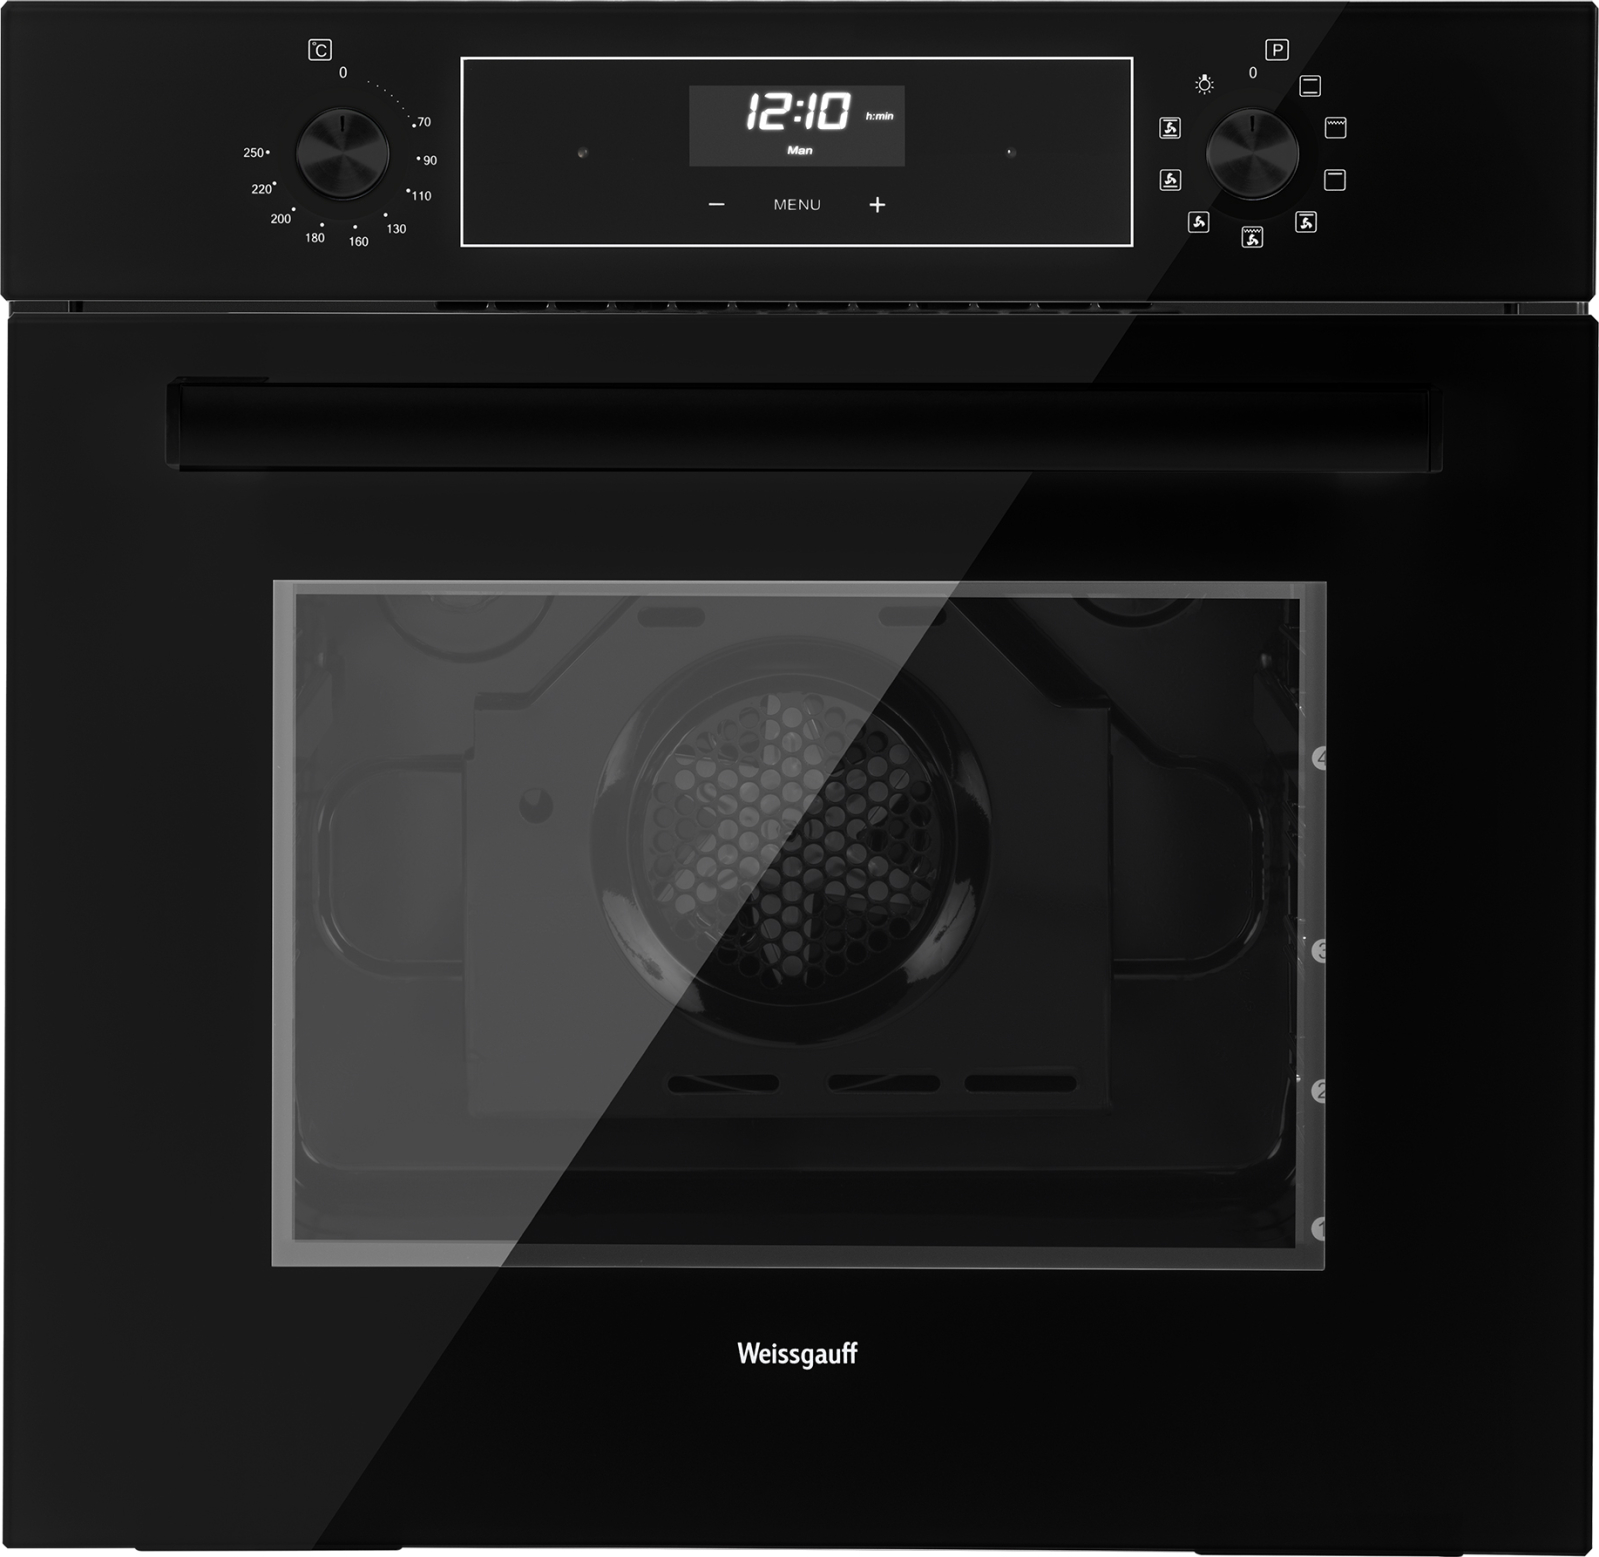 Встраиваемый электрический духовой шкаф Weissgauff EOV 291 PDB Black Edition черный встраиваемая микроволновая печь weissgauff hmt 206 black